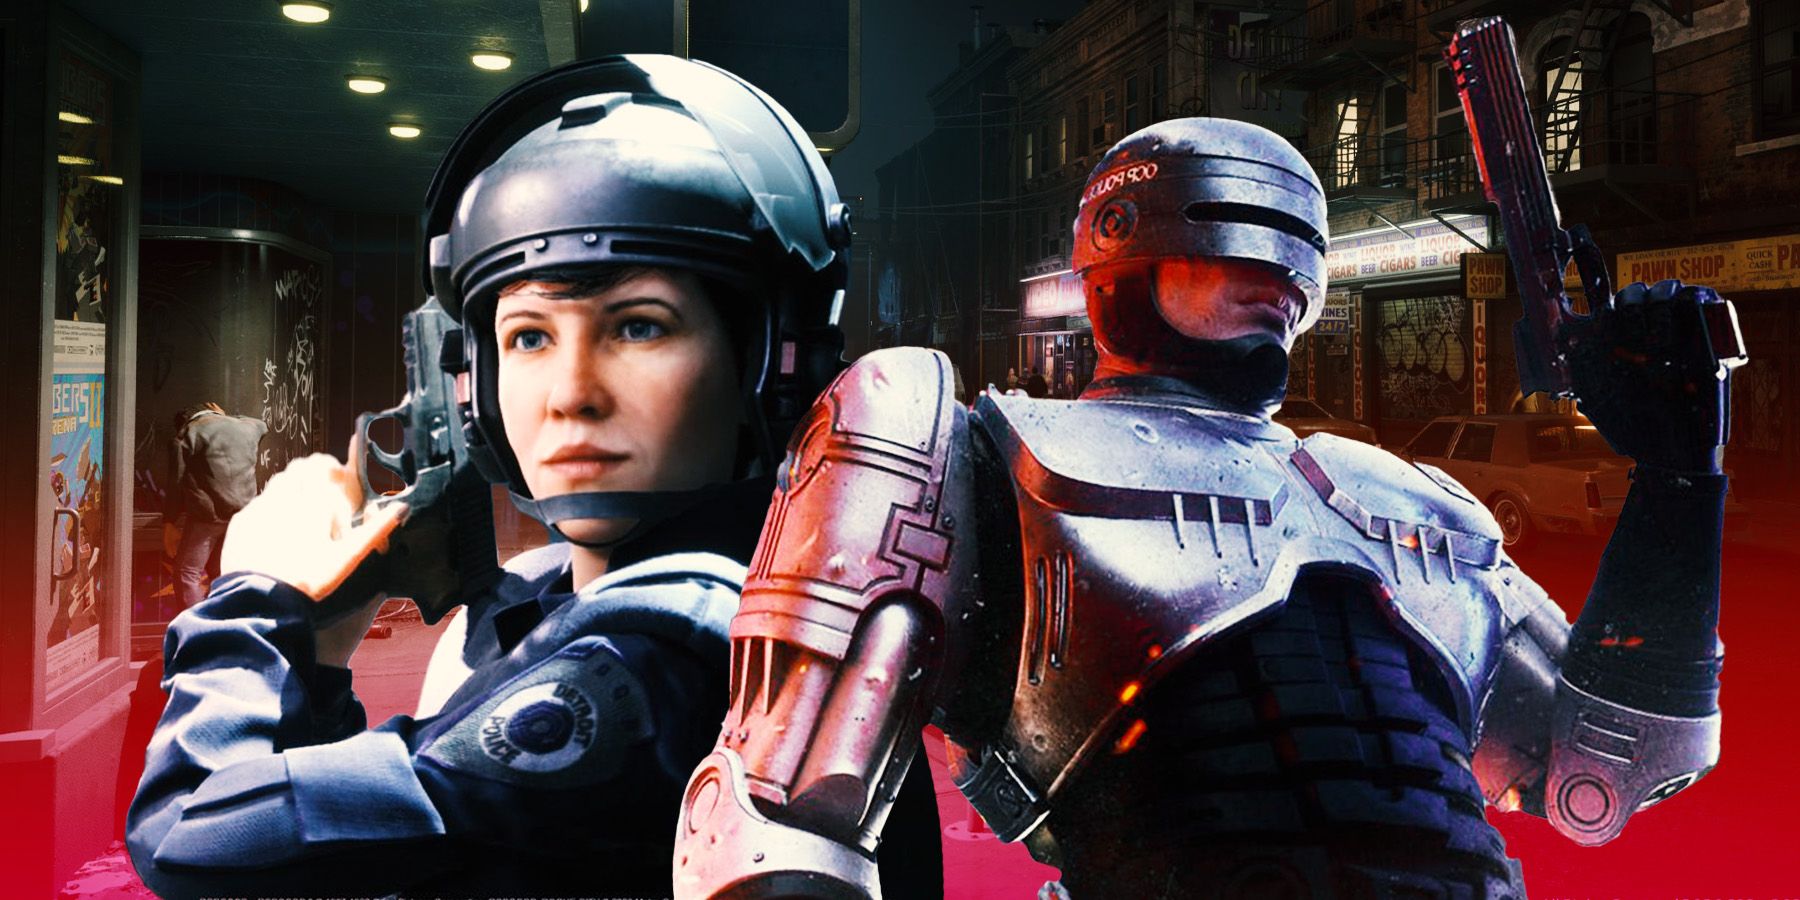 La batalla contra el crimen comienza en RoboCop: Rogue City, ya